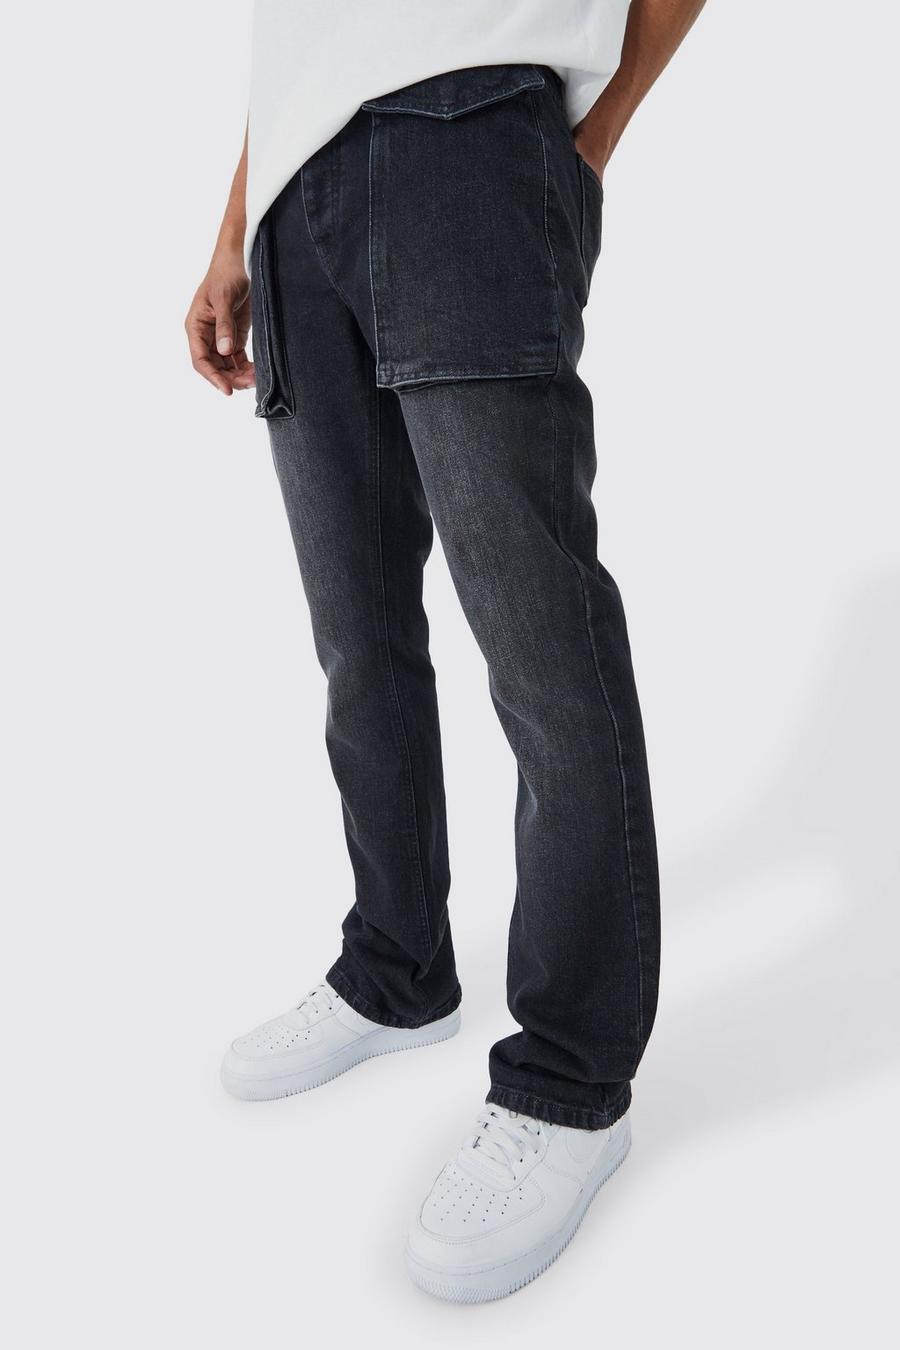 Jeans Slim Fit in denim rigido color antracite con tasche a zampa in rilievo, Charcoal